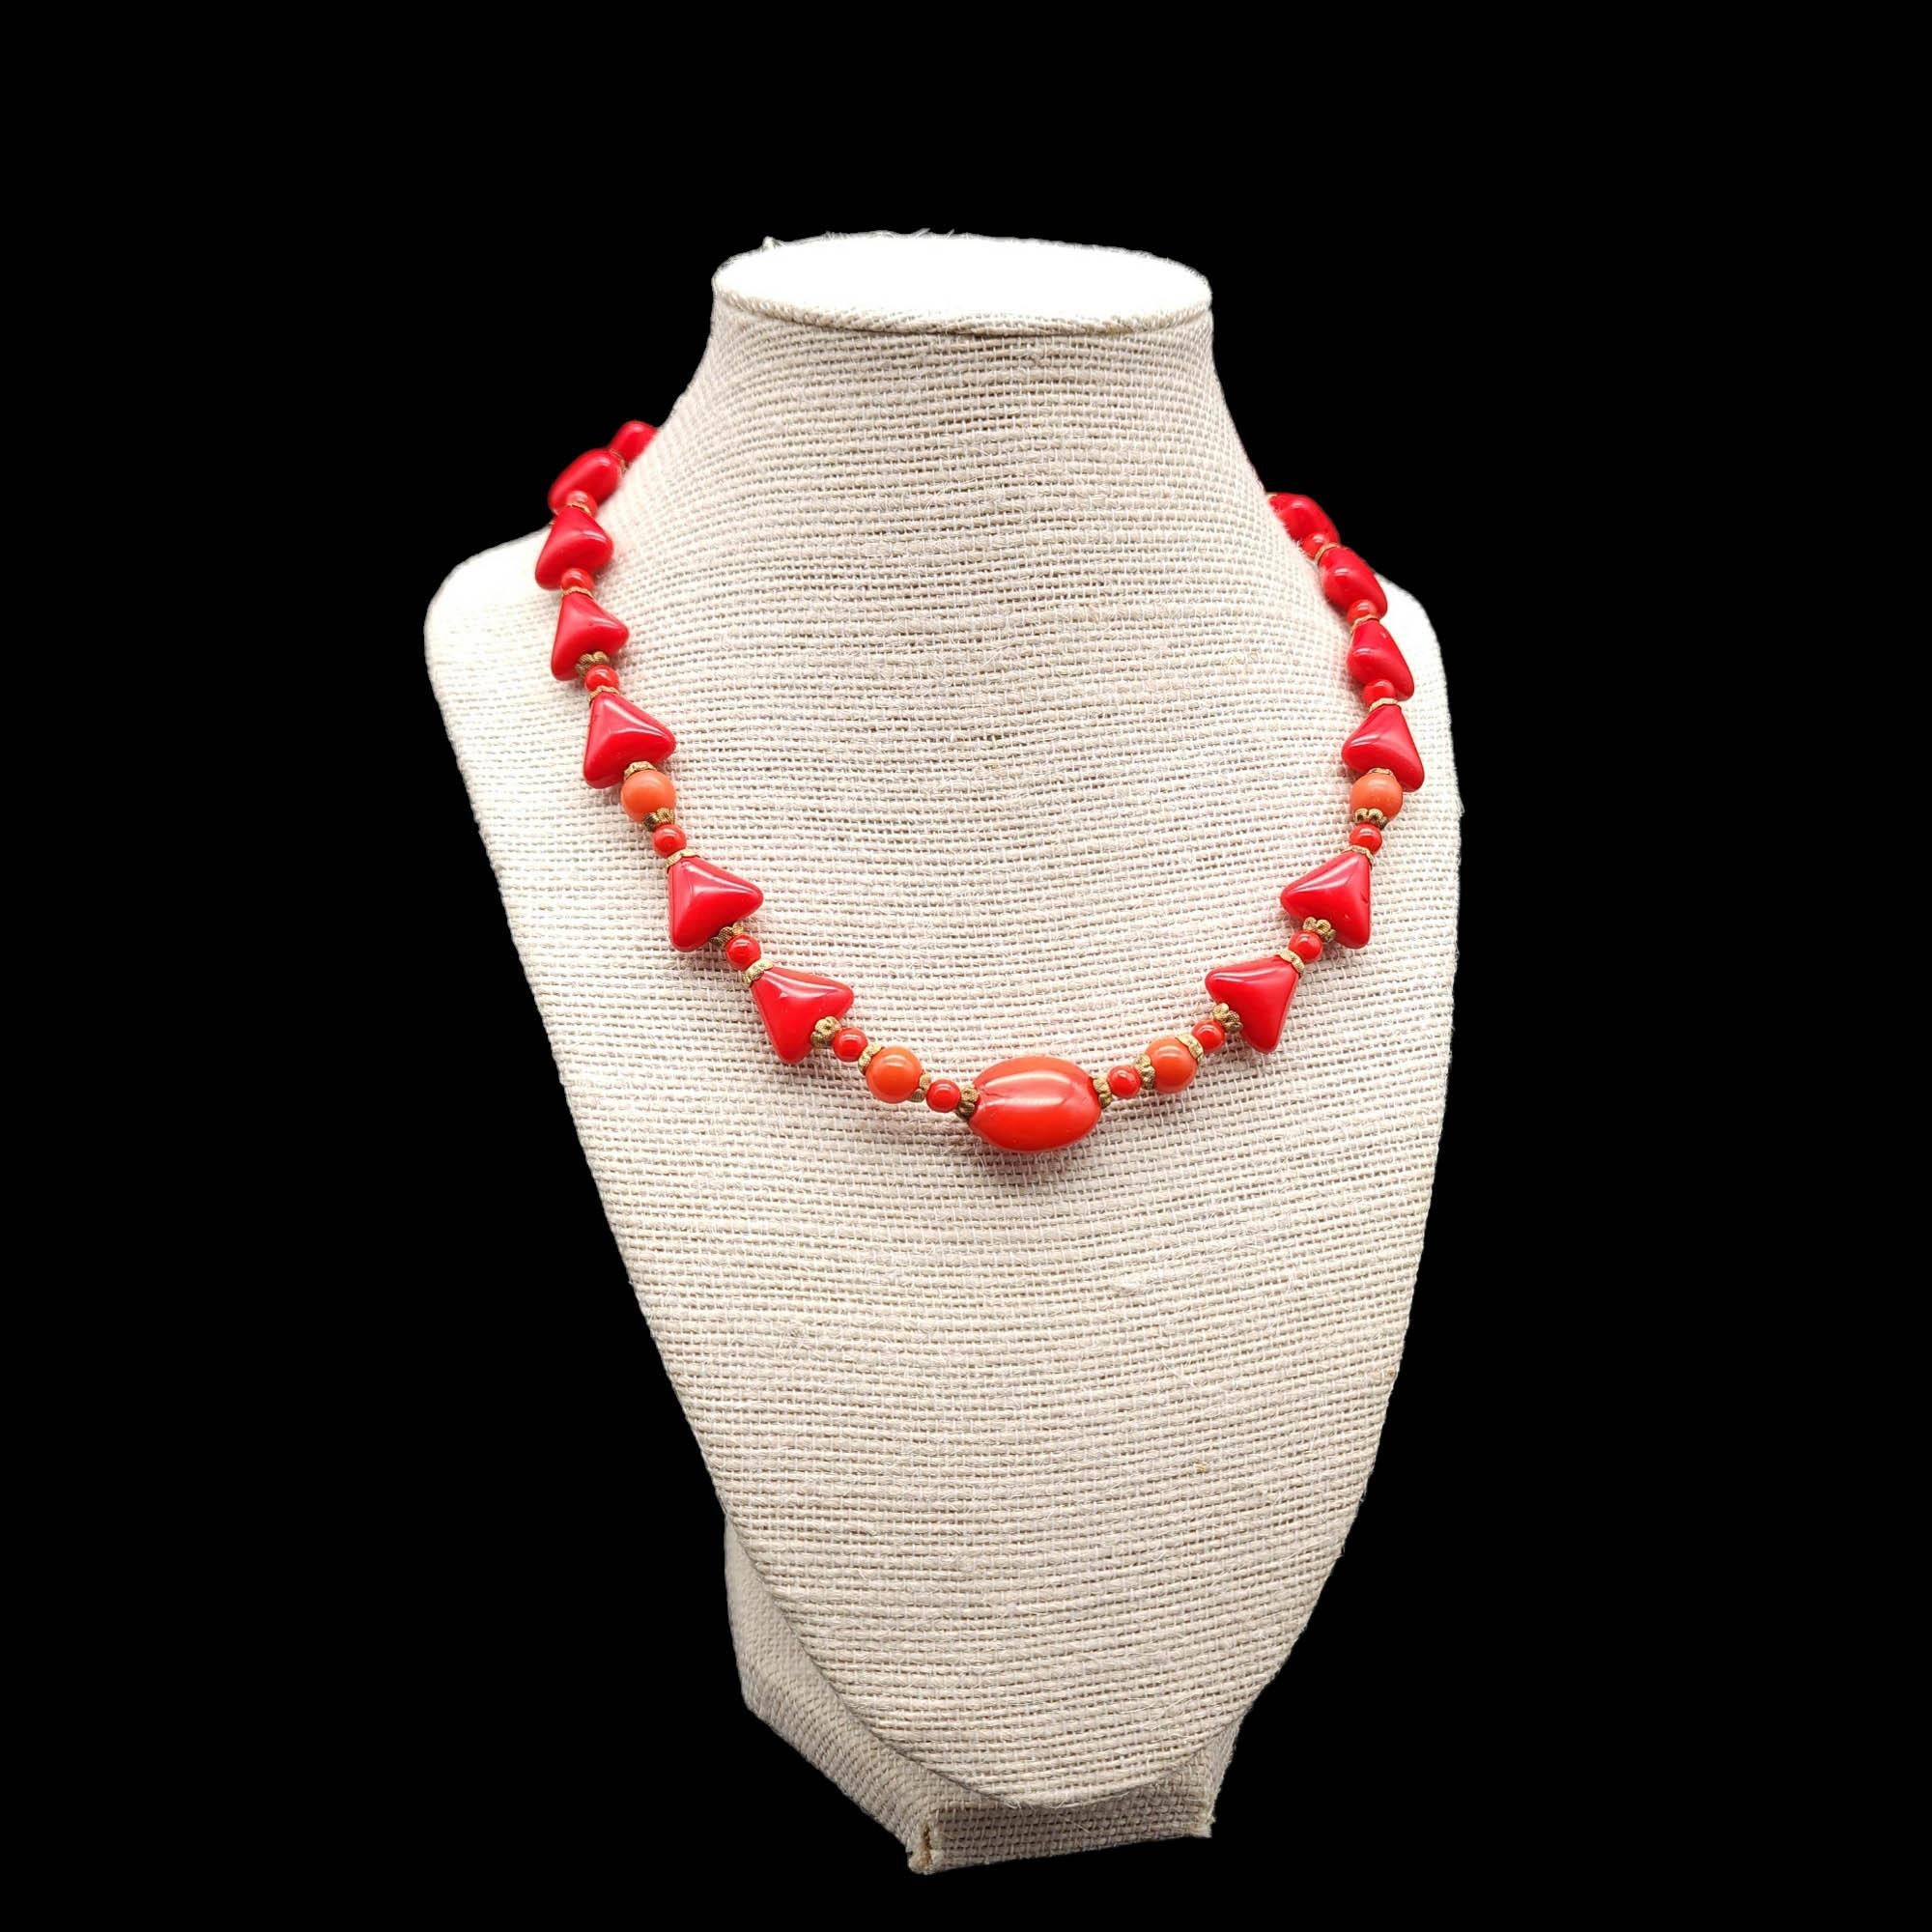 Länge der Halskette: 42 cm / 16.5 inches - Kragen / Choker Style

Tauchen Sie mit dieser roten Lucite-Halskette in eine Welt des klassischen Glamours ein. Dieses exquisite Stück zeichnet sich durch eine auffällige Kombination aus dreieckigen und